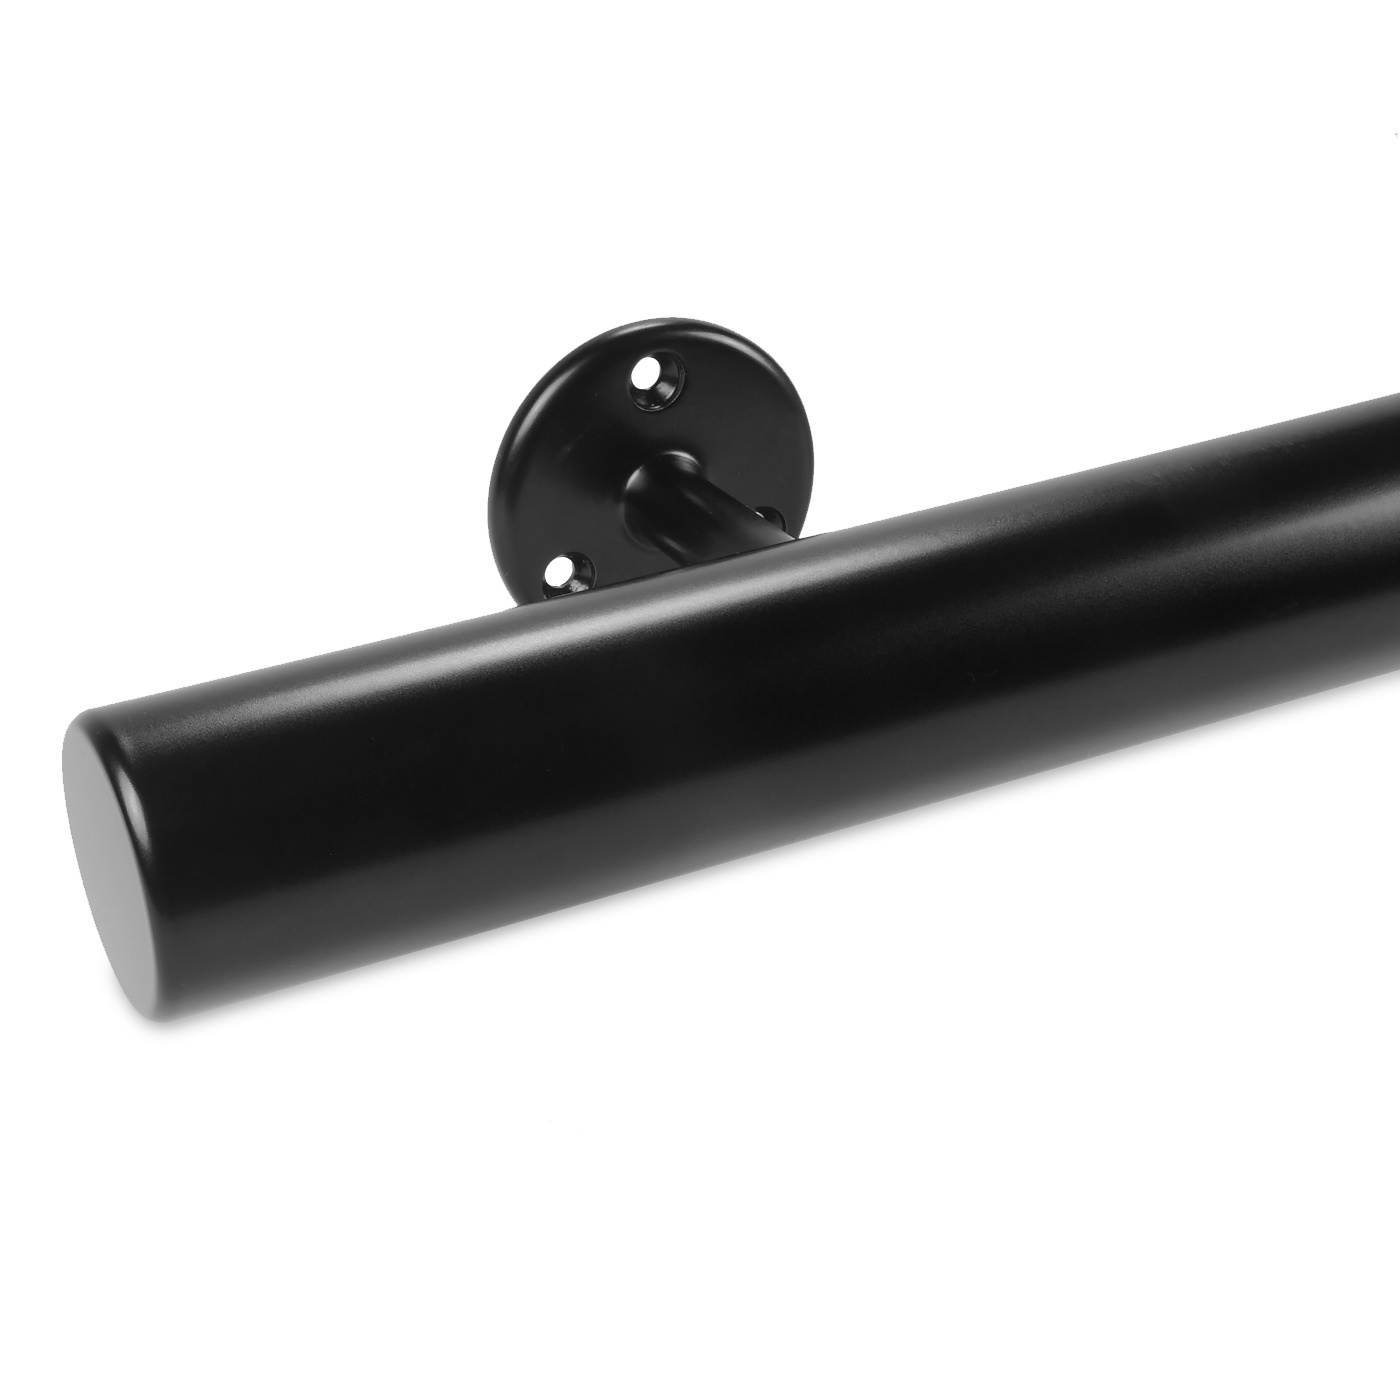  Handlauf schwarz beschichtet rund Modell 4 - Runde Treppengeländer - Treppenhandlauf mit schwarzer Pulverbeschichtung RAL 9005